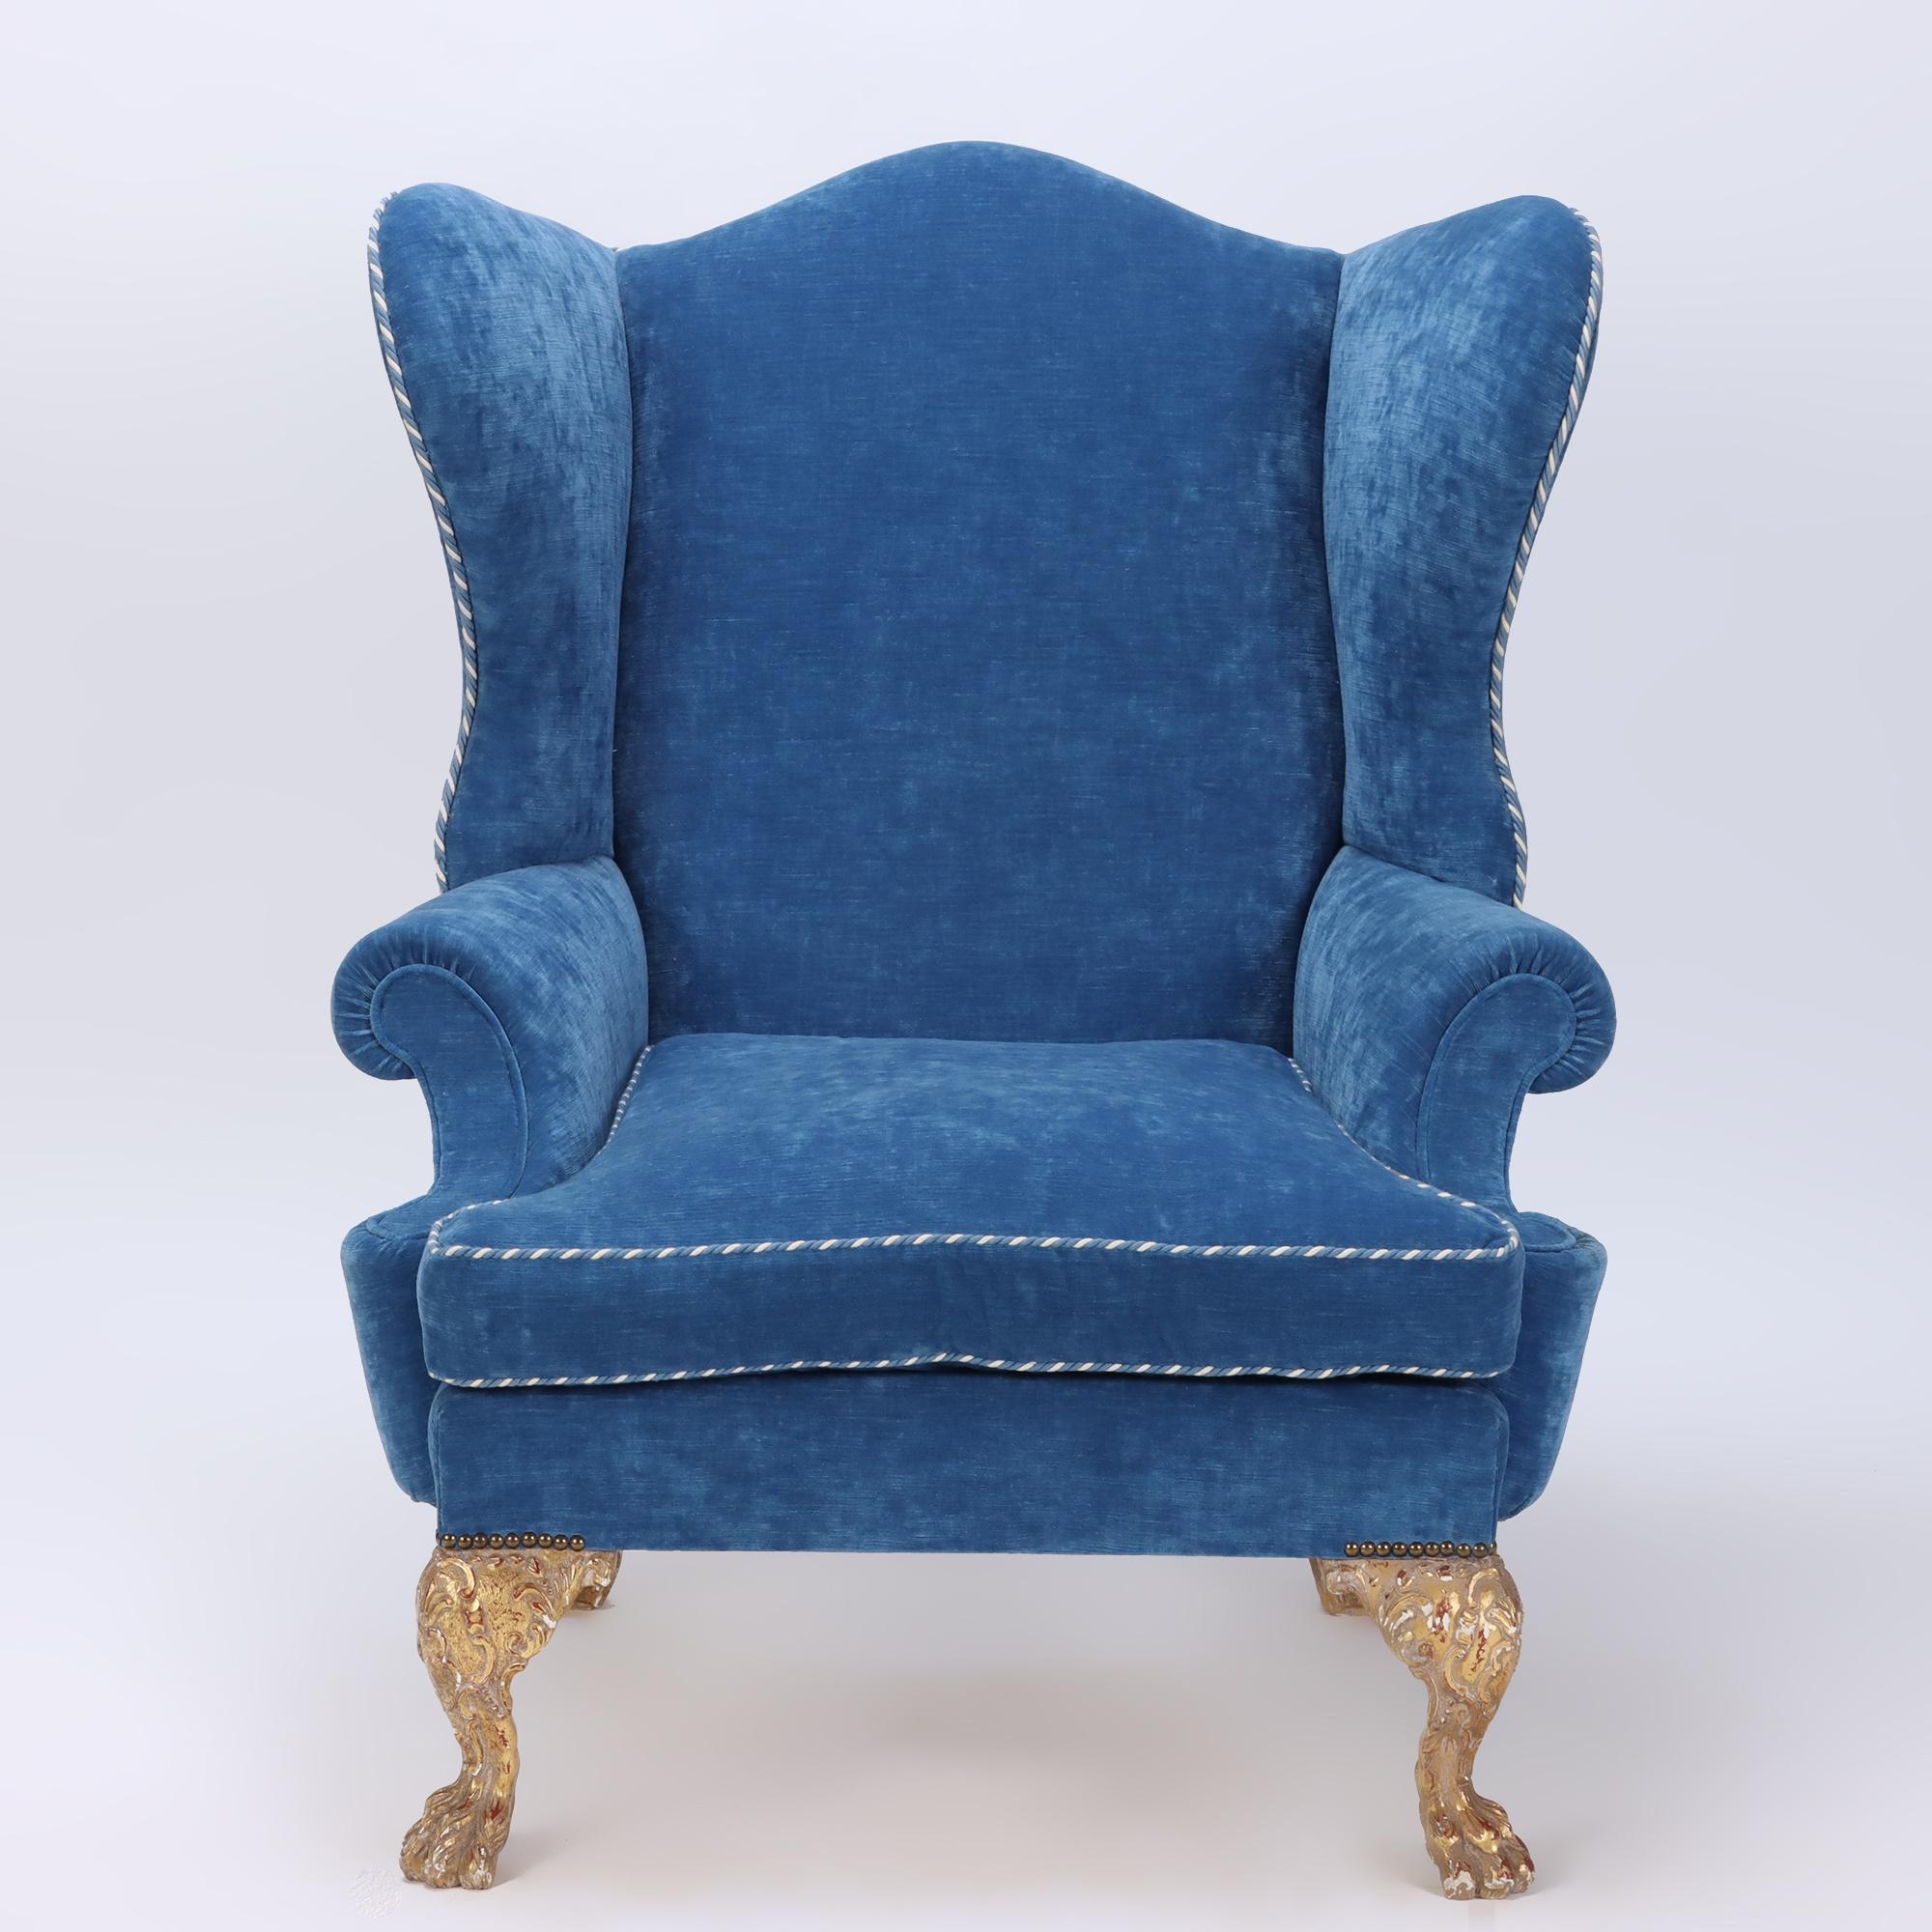 Un fauteuil à oreilles et un ottoman surdimensionnés et exagérés, tapissés de bleu, datant de 1900, avec des pieds sculptés et dorés. Une pièce de référence pour sûr ! 
Ottoman : 25 